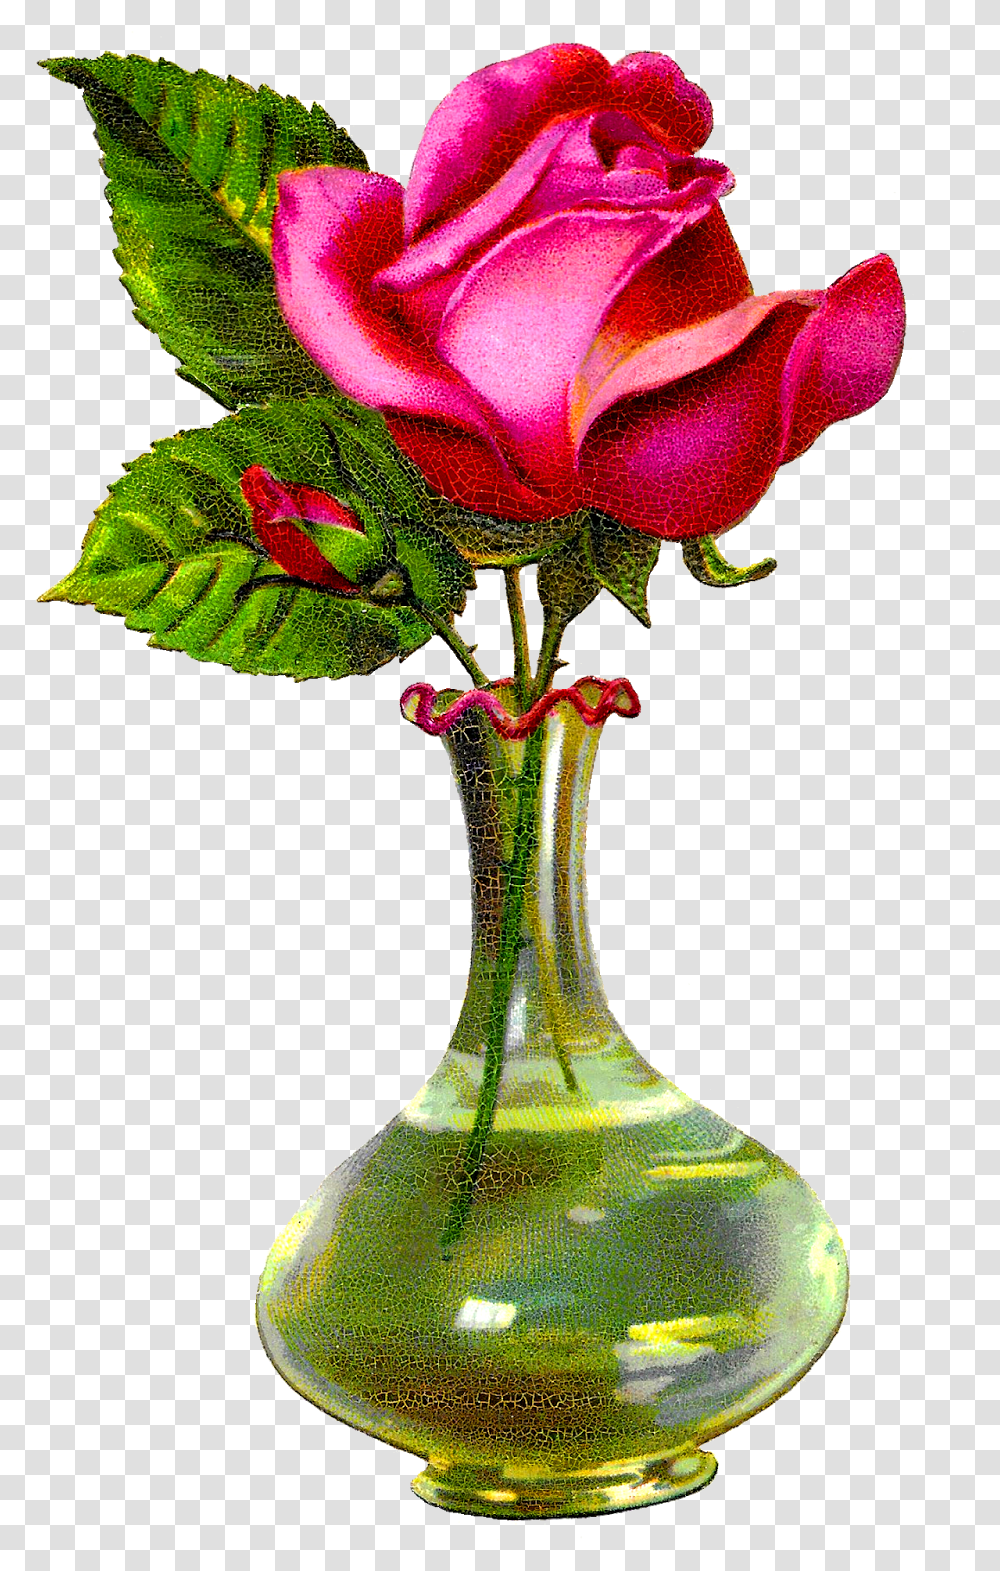 Antique Images Pink Rose Rose Flower With Vase, Plant, Jar, Pottery, Blossom Transparent Png